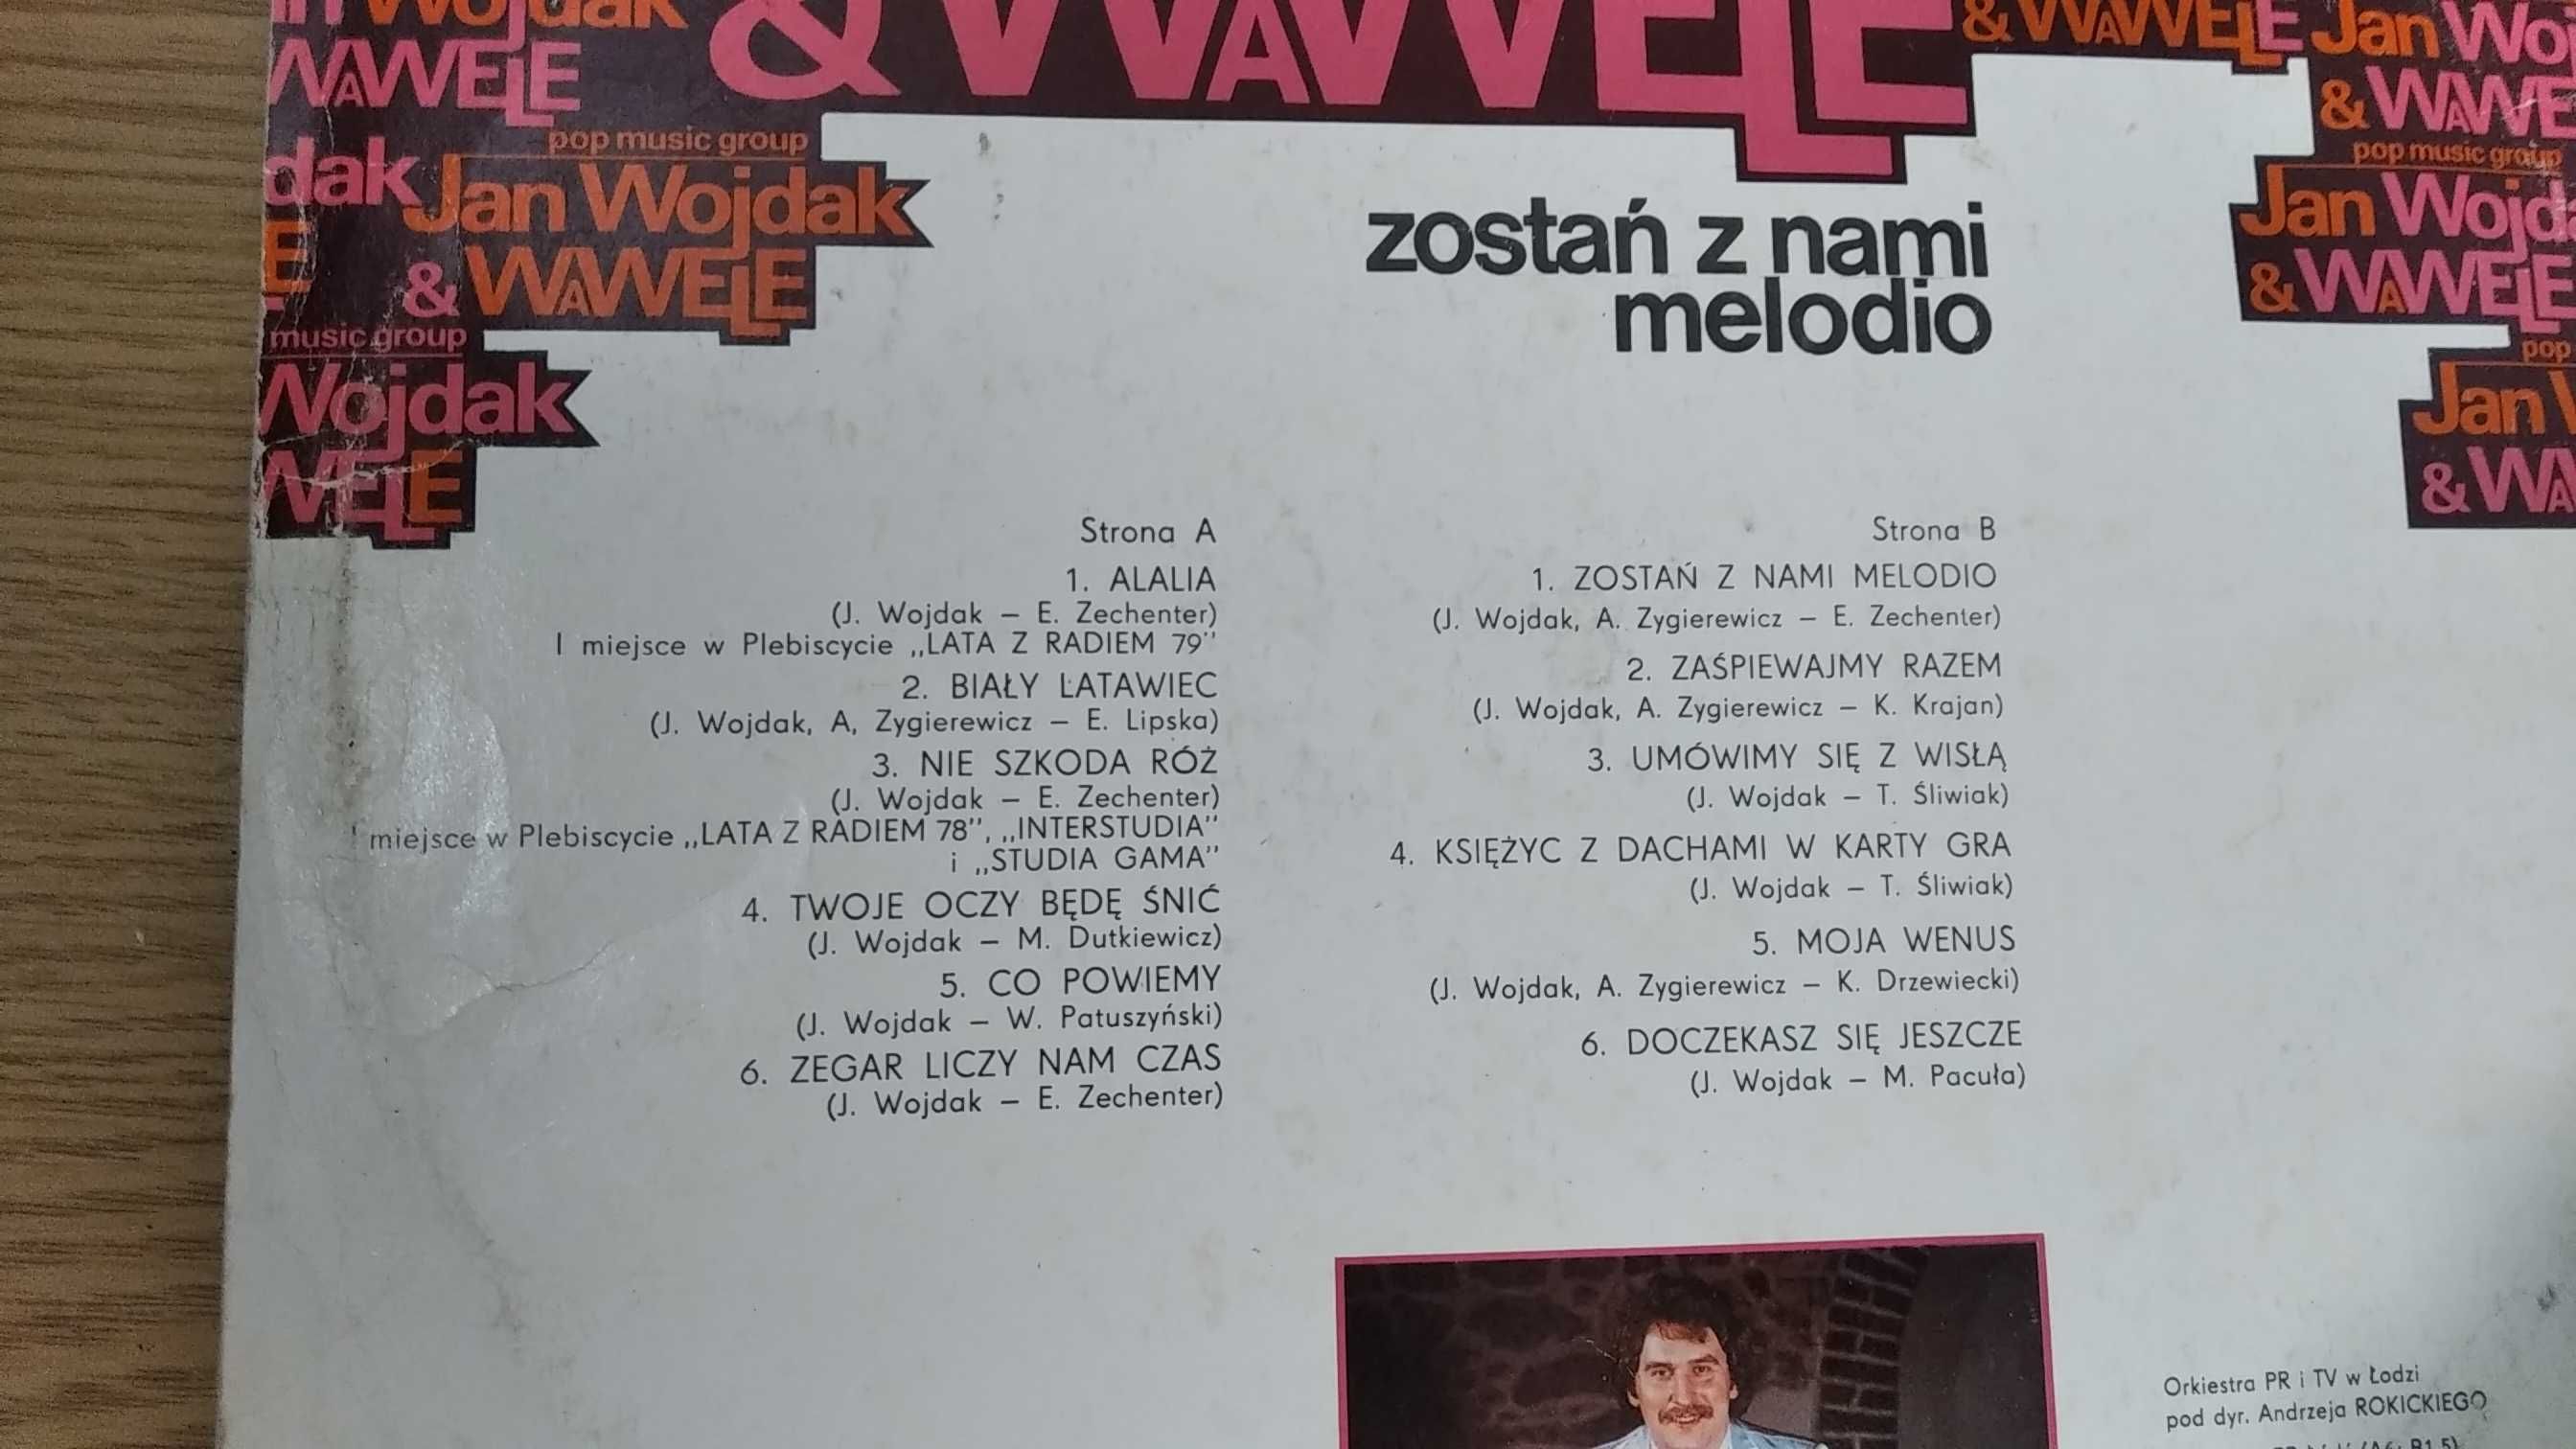 Winyl Jan Wojdak Wawele Zostań z nami melodio VG-